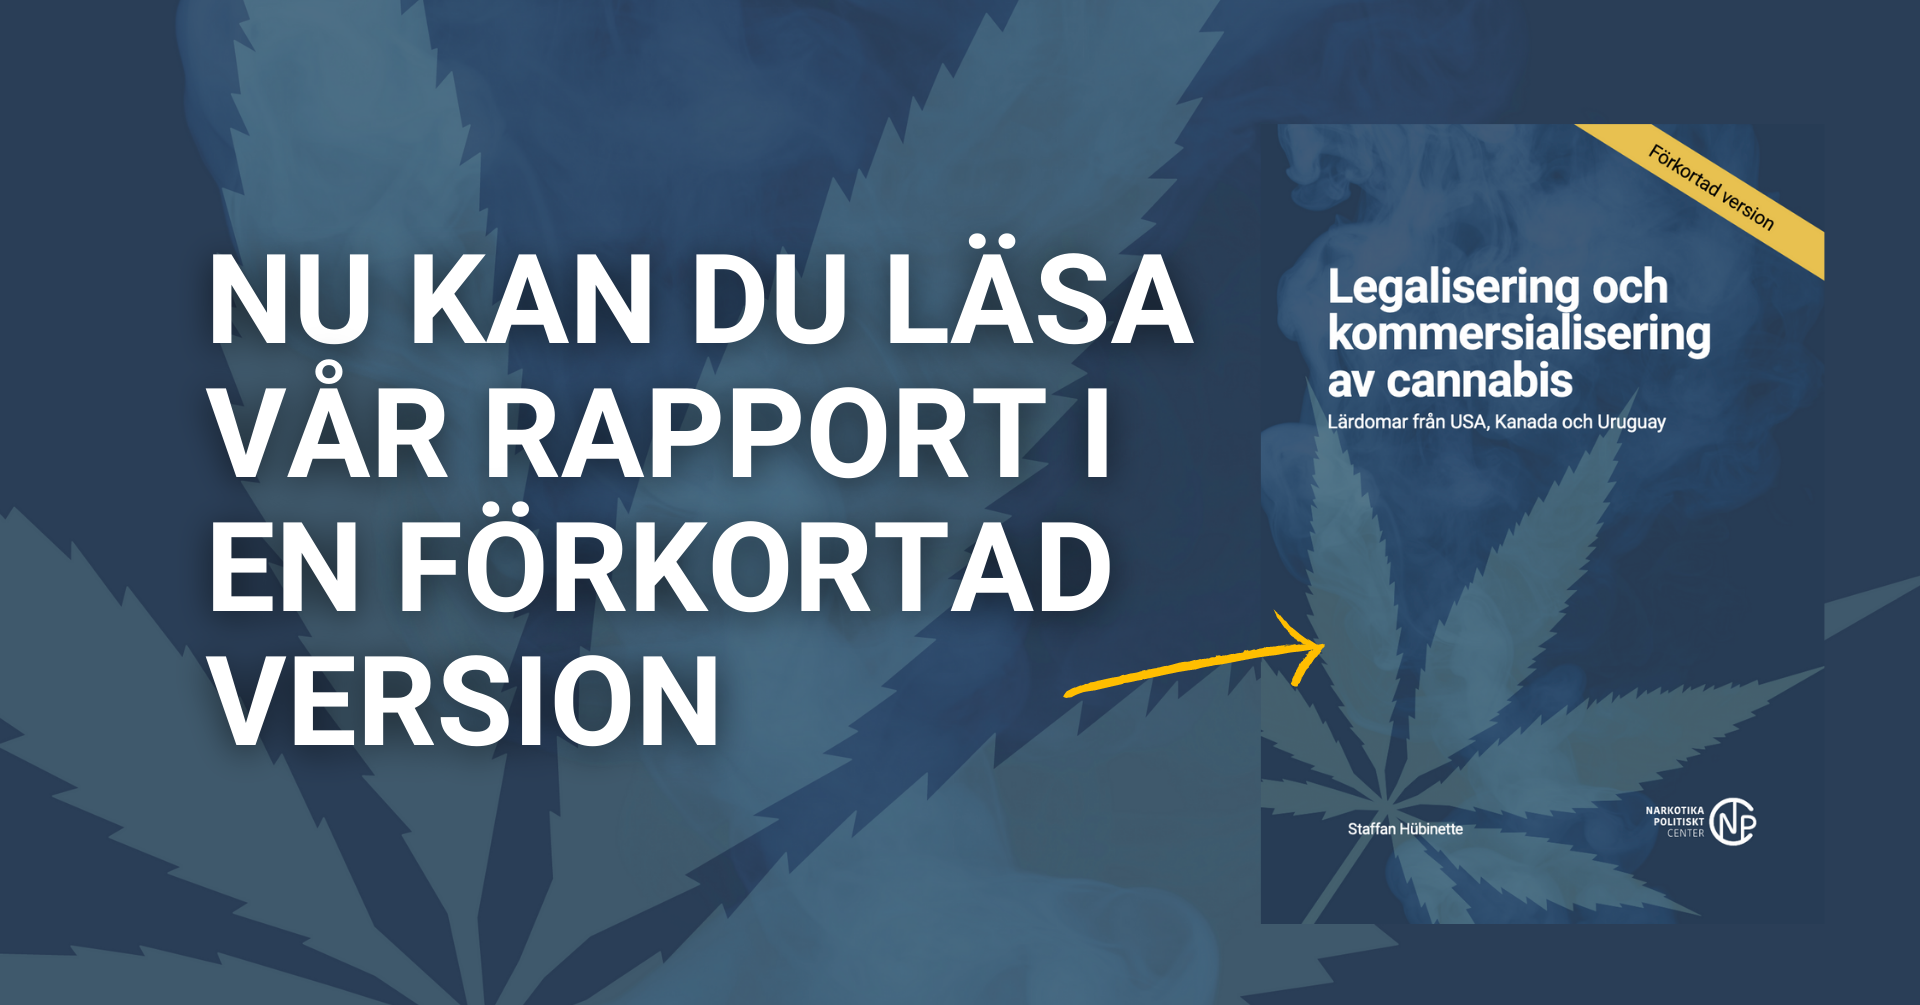 Förkortad version av vår rapport om legalisering